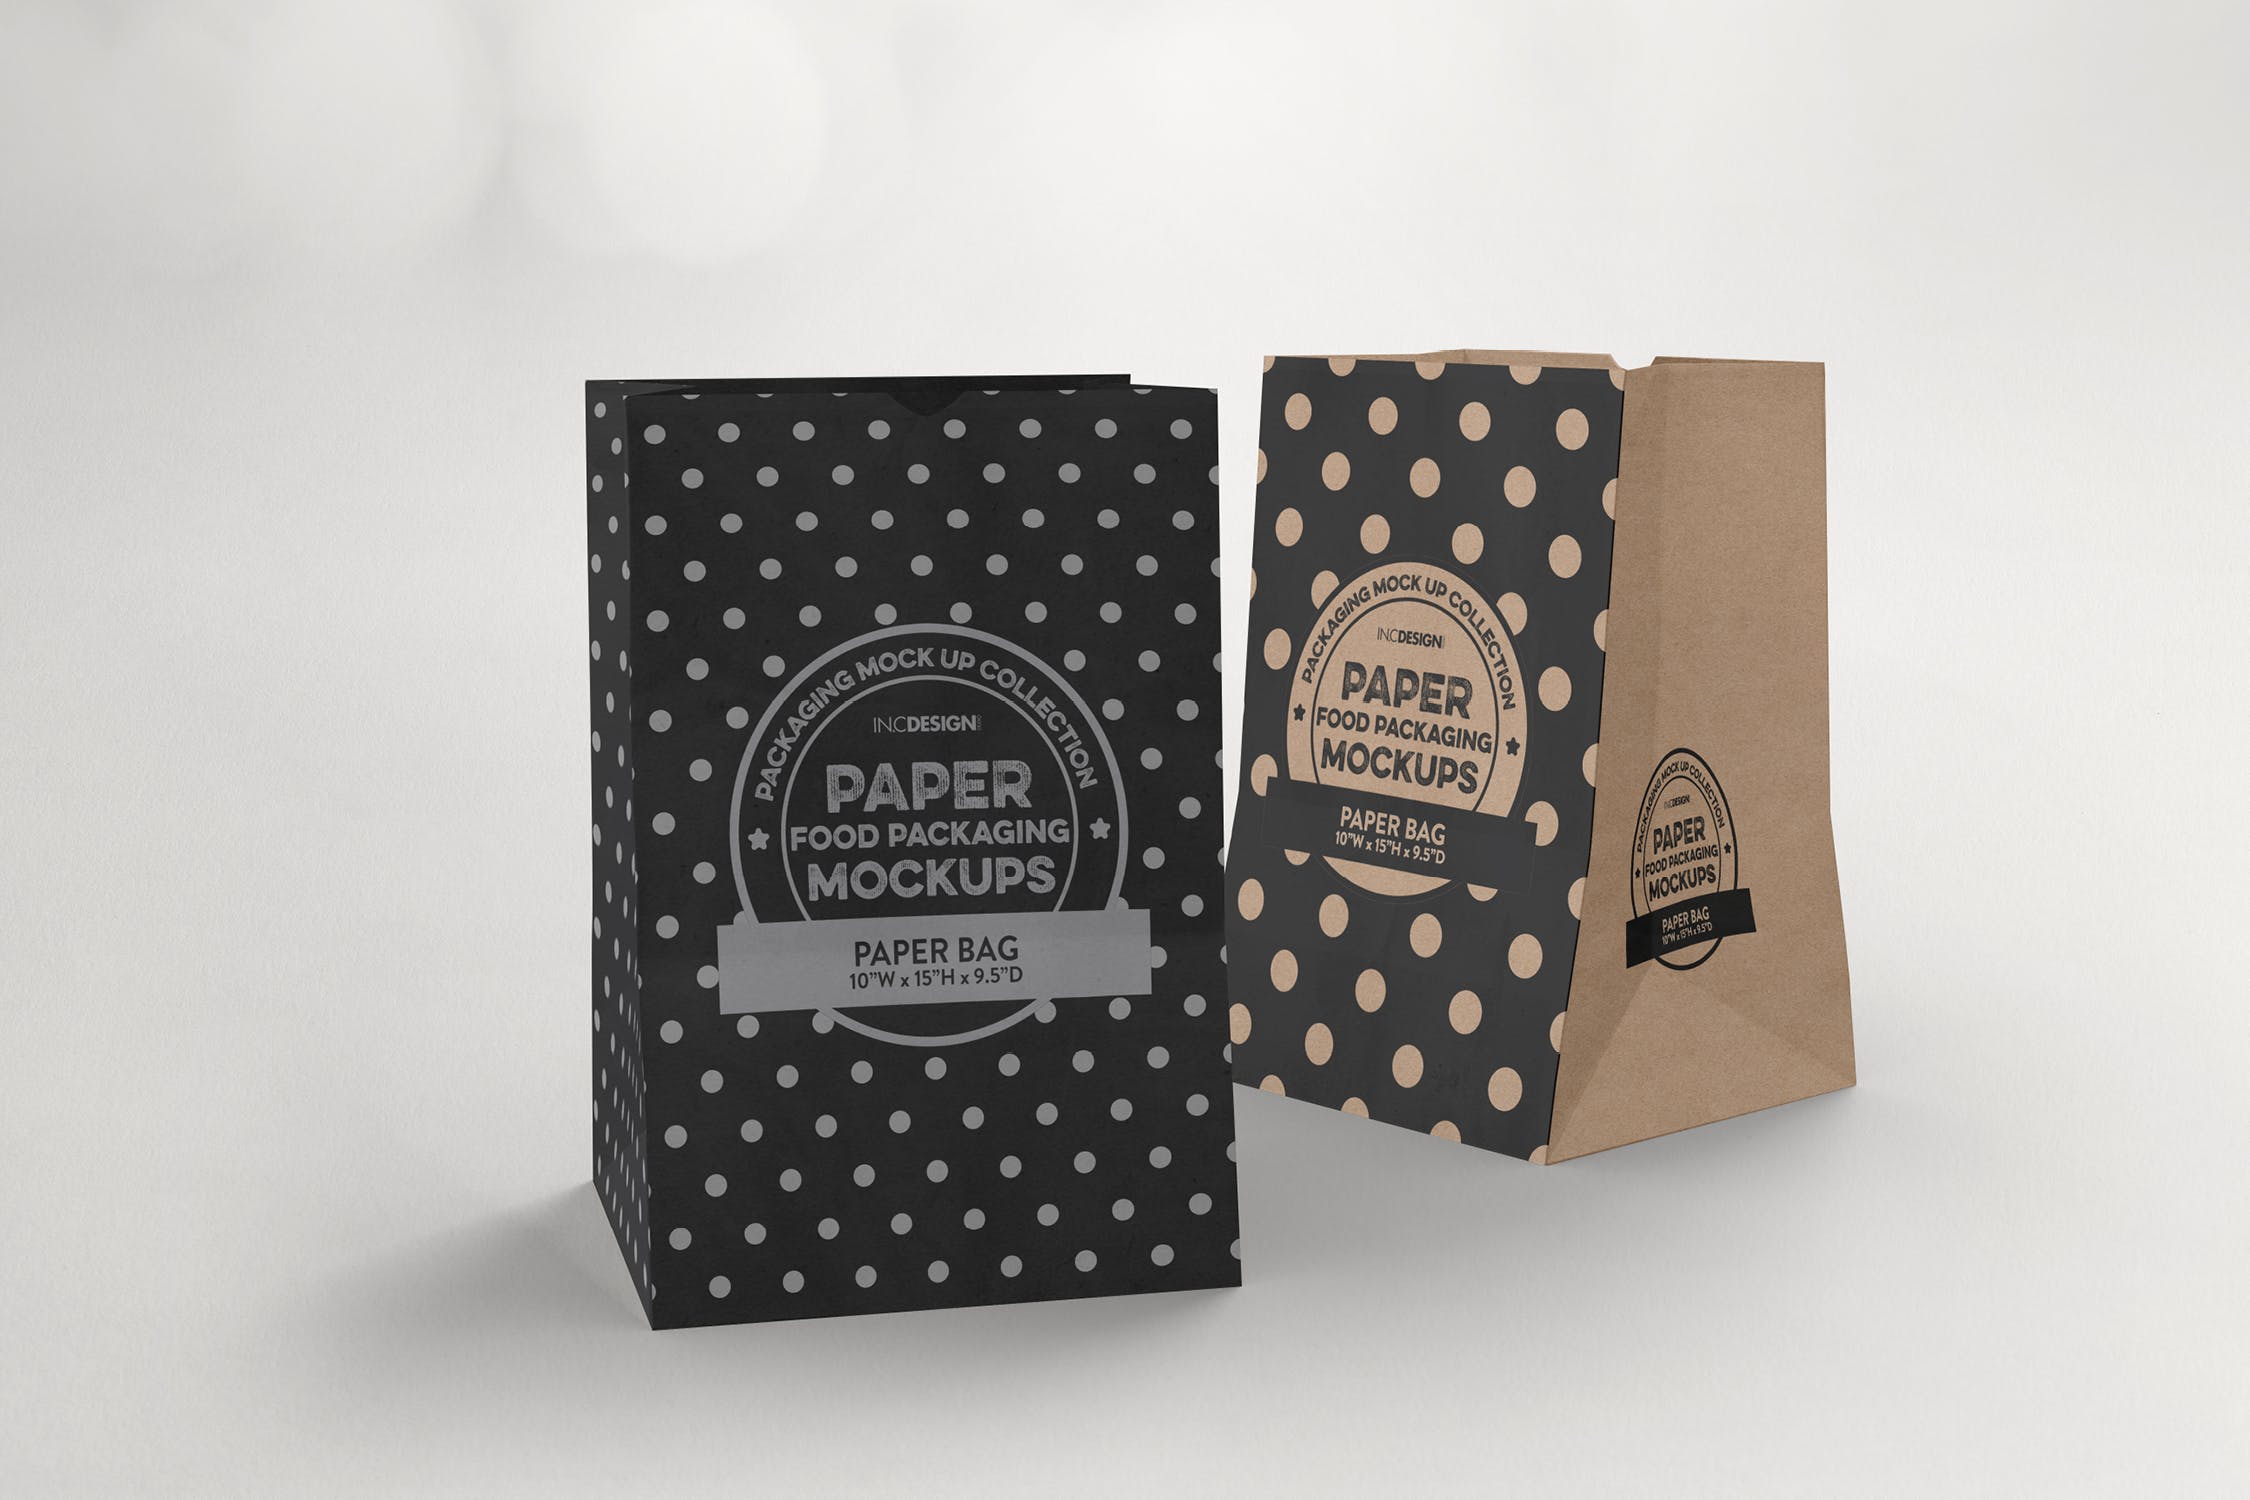 杂货纸袋包装设计效果图蚂蚁素材精选 Grocery Paper Bags Packaging Mockup插图(2)